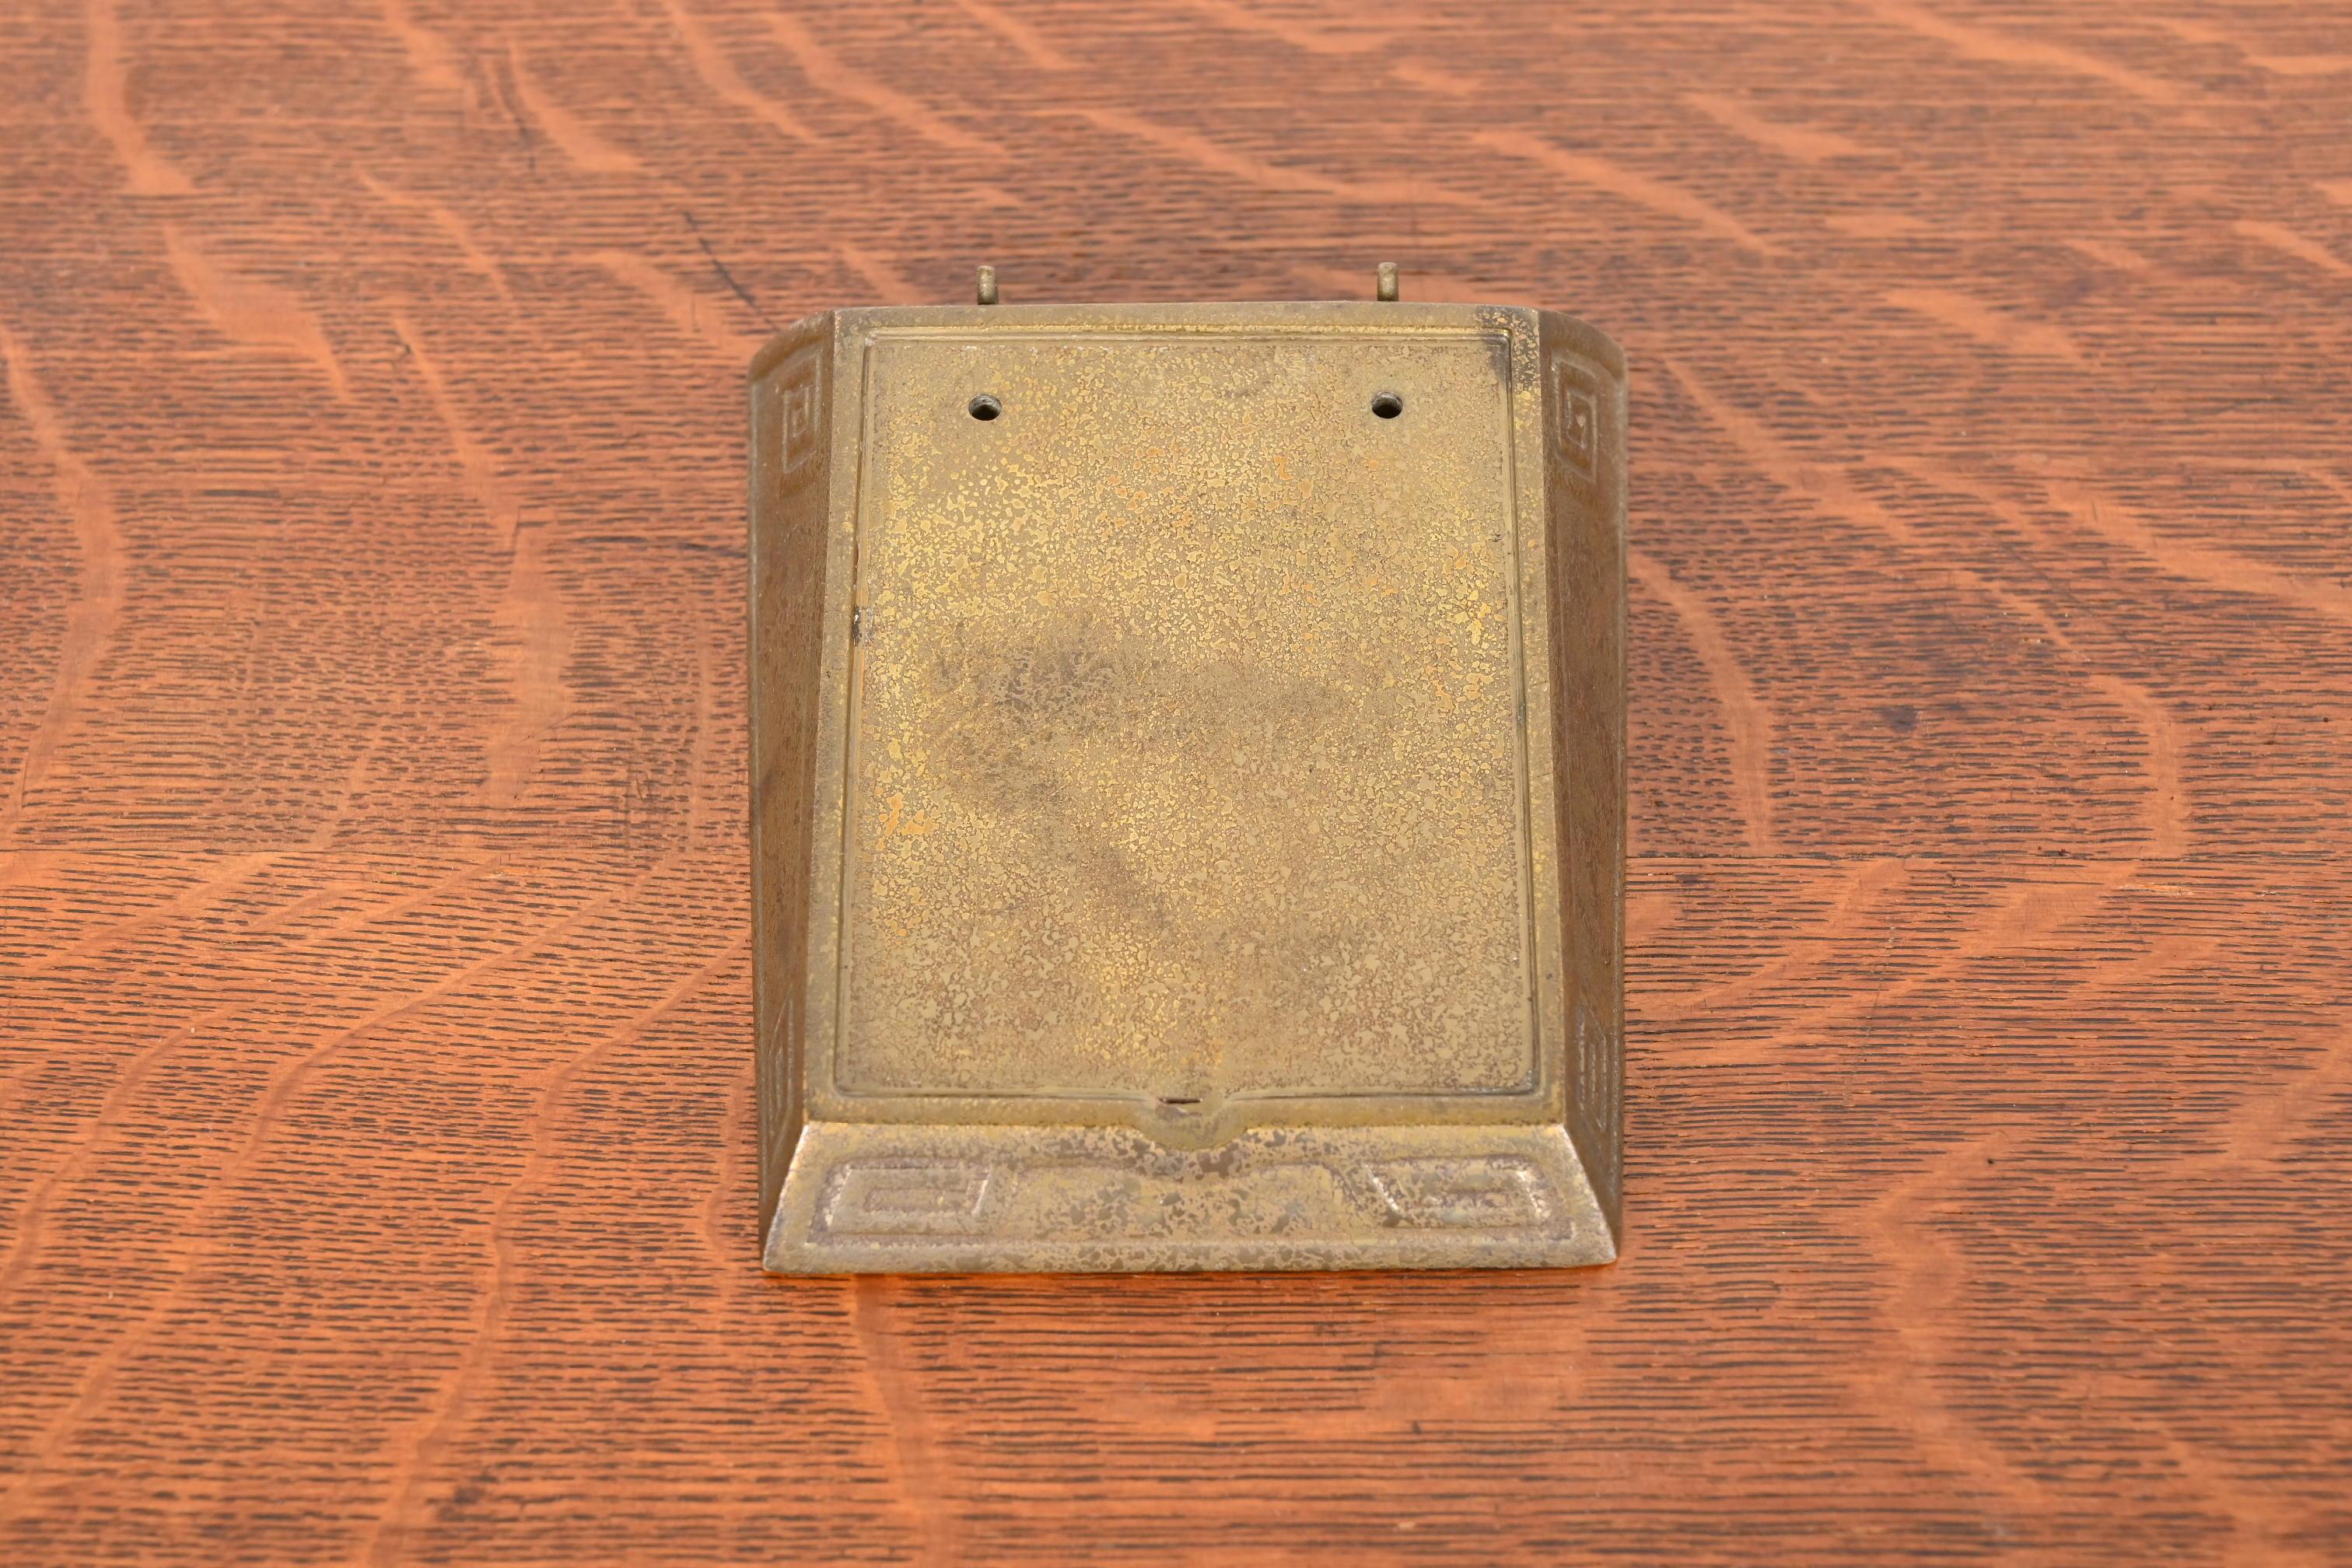 Ein wunderschöner, antiker Tischkalenderhalter aus vergoldeter Bronze mit griechischen Schlüsselmotiven

Von Tiffany Studios (signiert auf der Unterseite)

New York, USA, Anfang des 20. Jahrhunderts

Maße: 4,75 